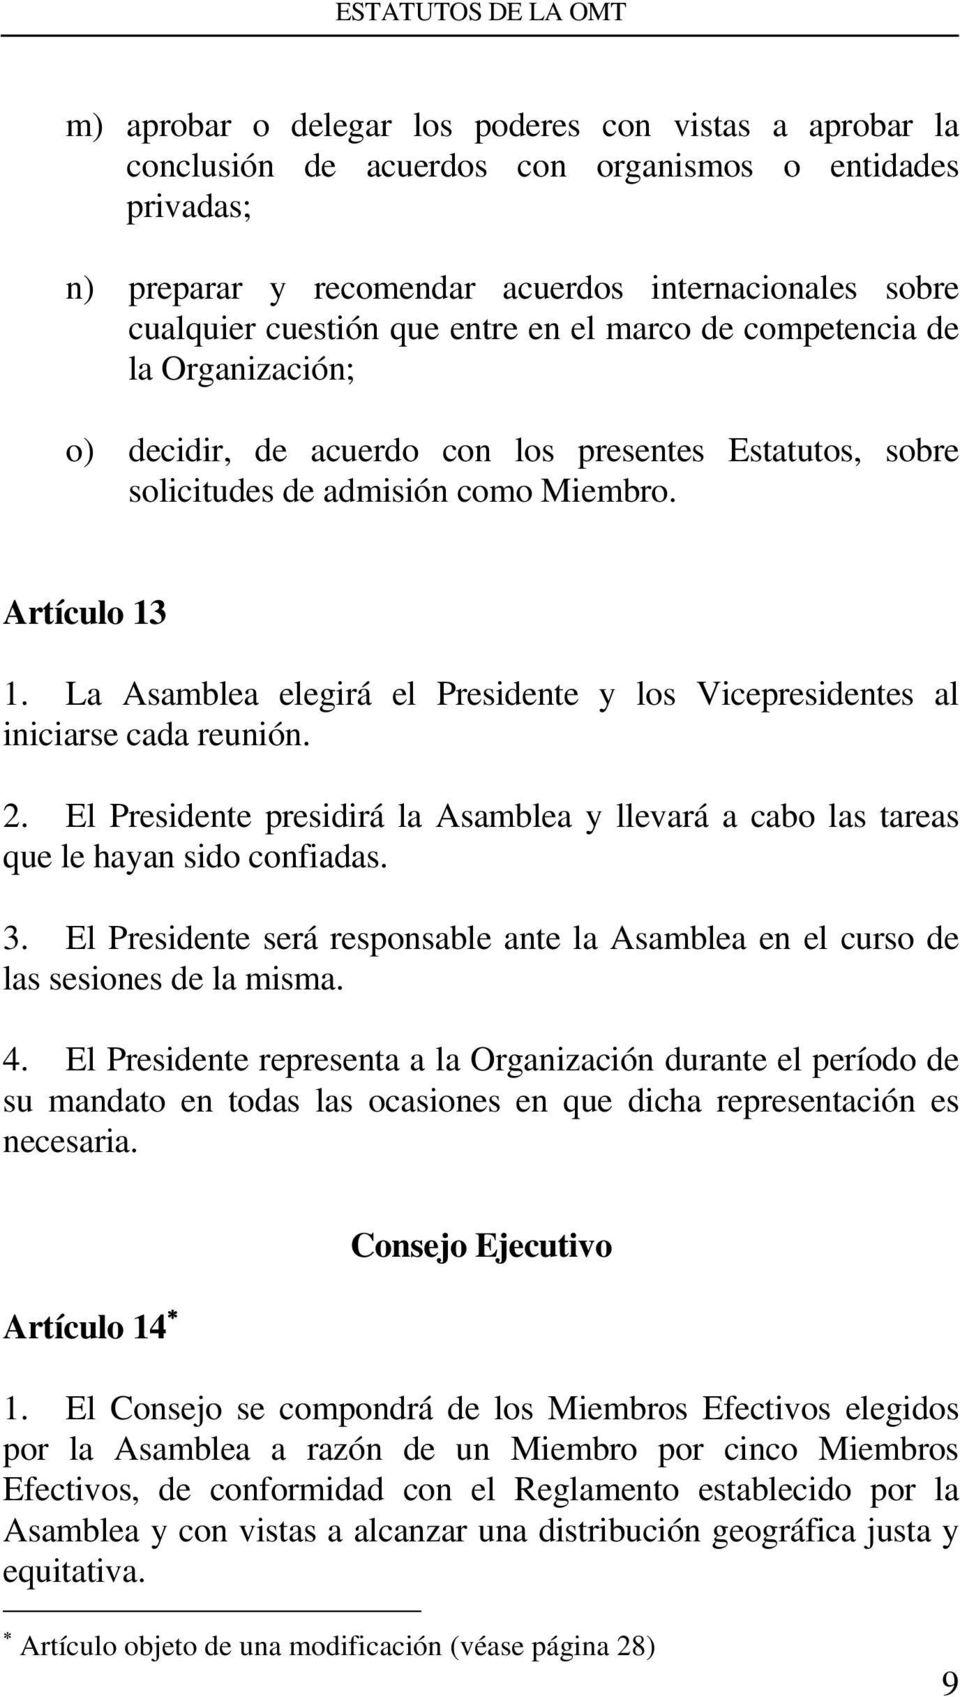 La Asamblea elegirá el Presidente y los Vicepresidentes al iniciarse cada reunión. 2. El Presidente presidirá la Asamblea y llevará a cabo las tareas que le hayan sido confiadas. 3.